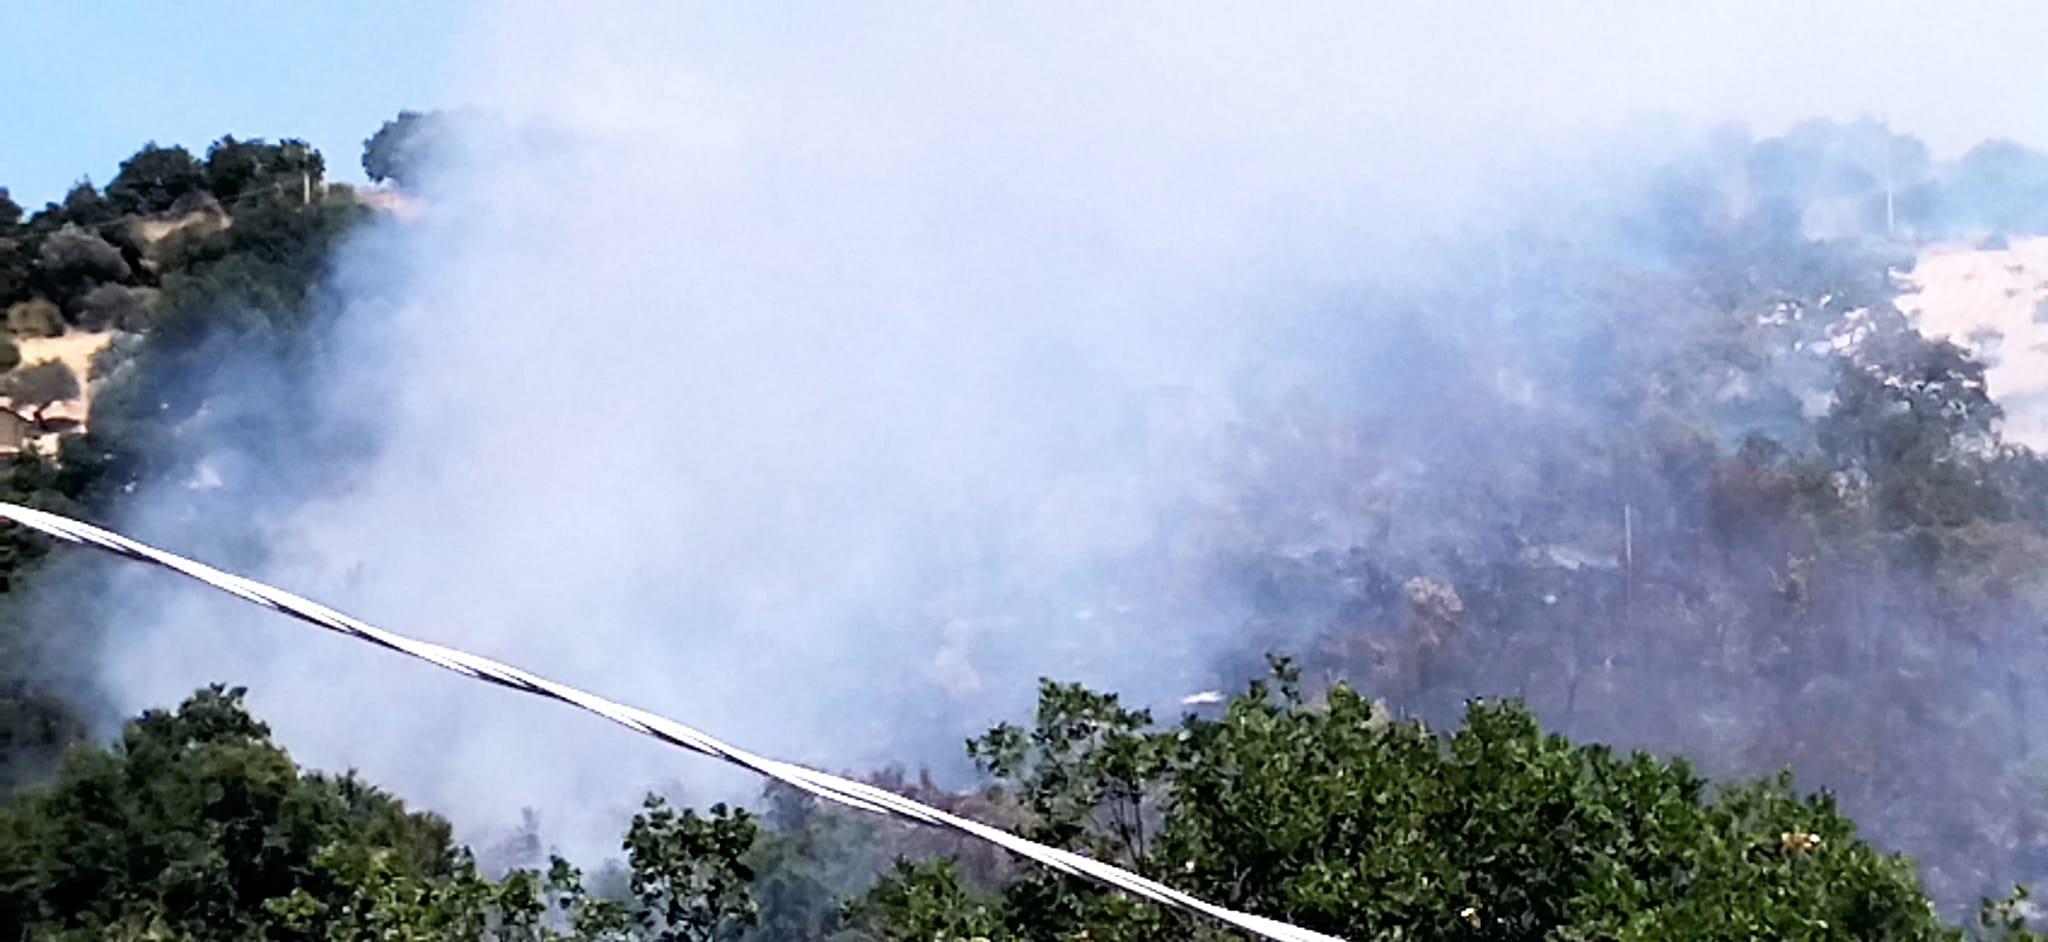 Incendio ad Agropoli, vigili del fuoco in azione per domare le fiamme